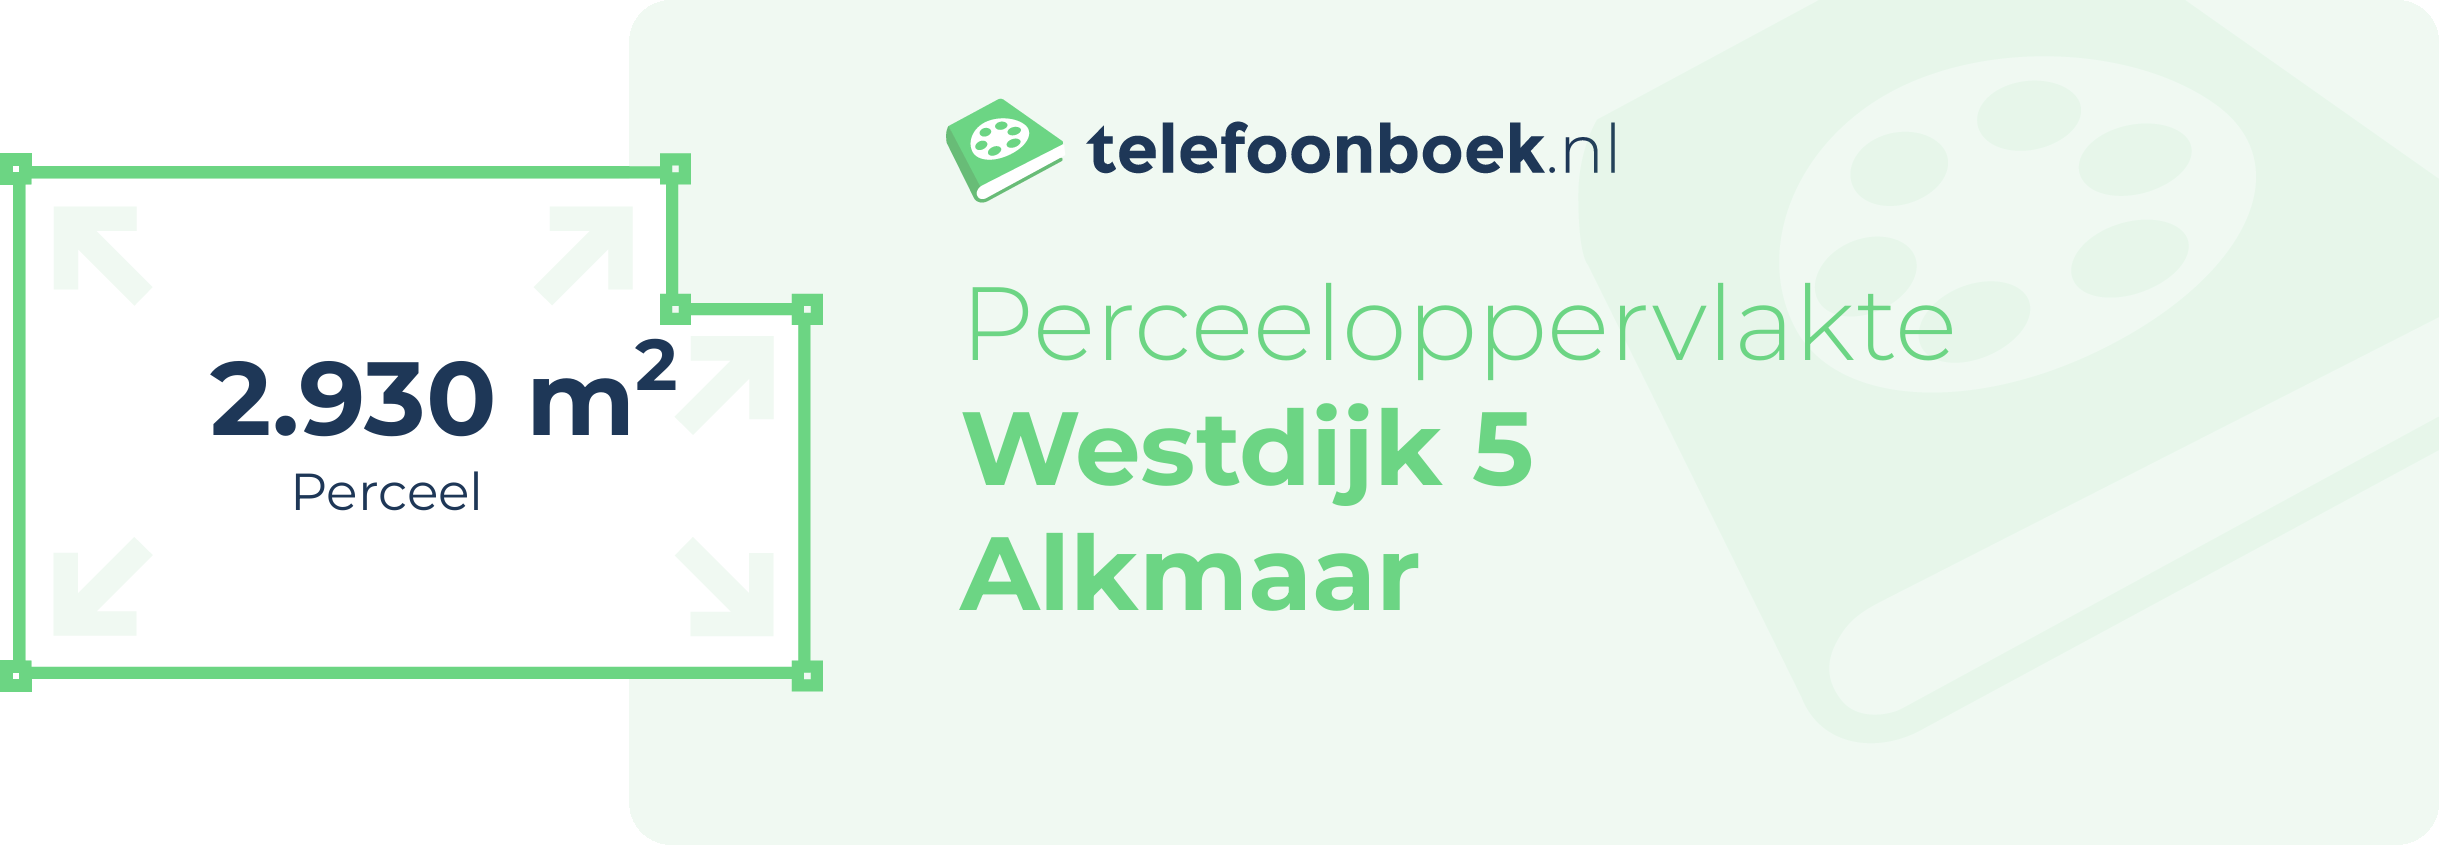 Perceeloppervlakte Westdijk 5 Alkmaar